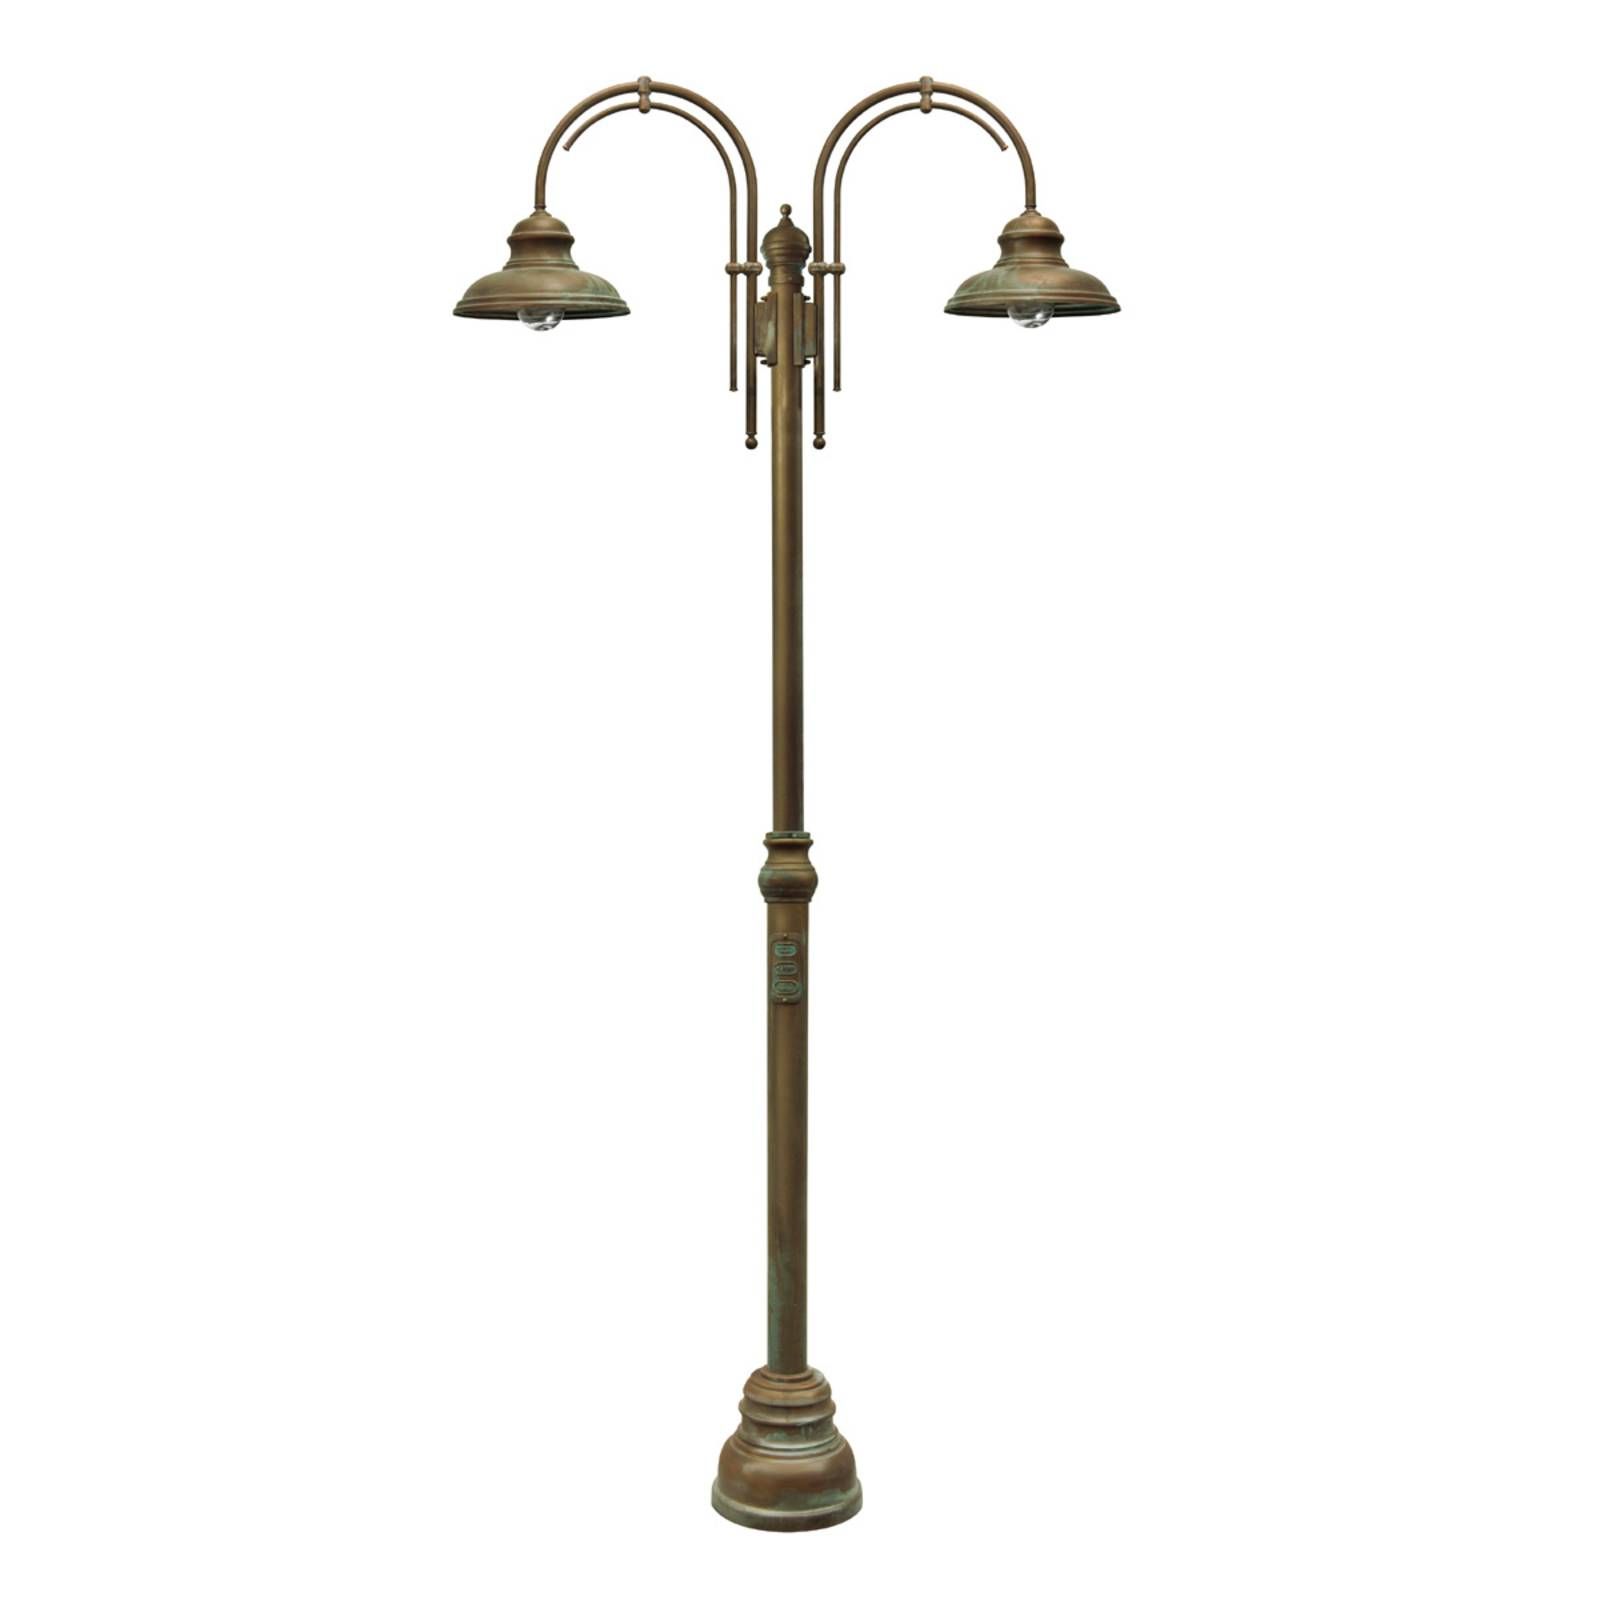 Moretti Luce Stĺpová lampa, dve svetlá s dvoma oblúkmi, starožitná mosadz, E27, 75W, L: 125 cm, K: 308cm